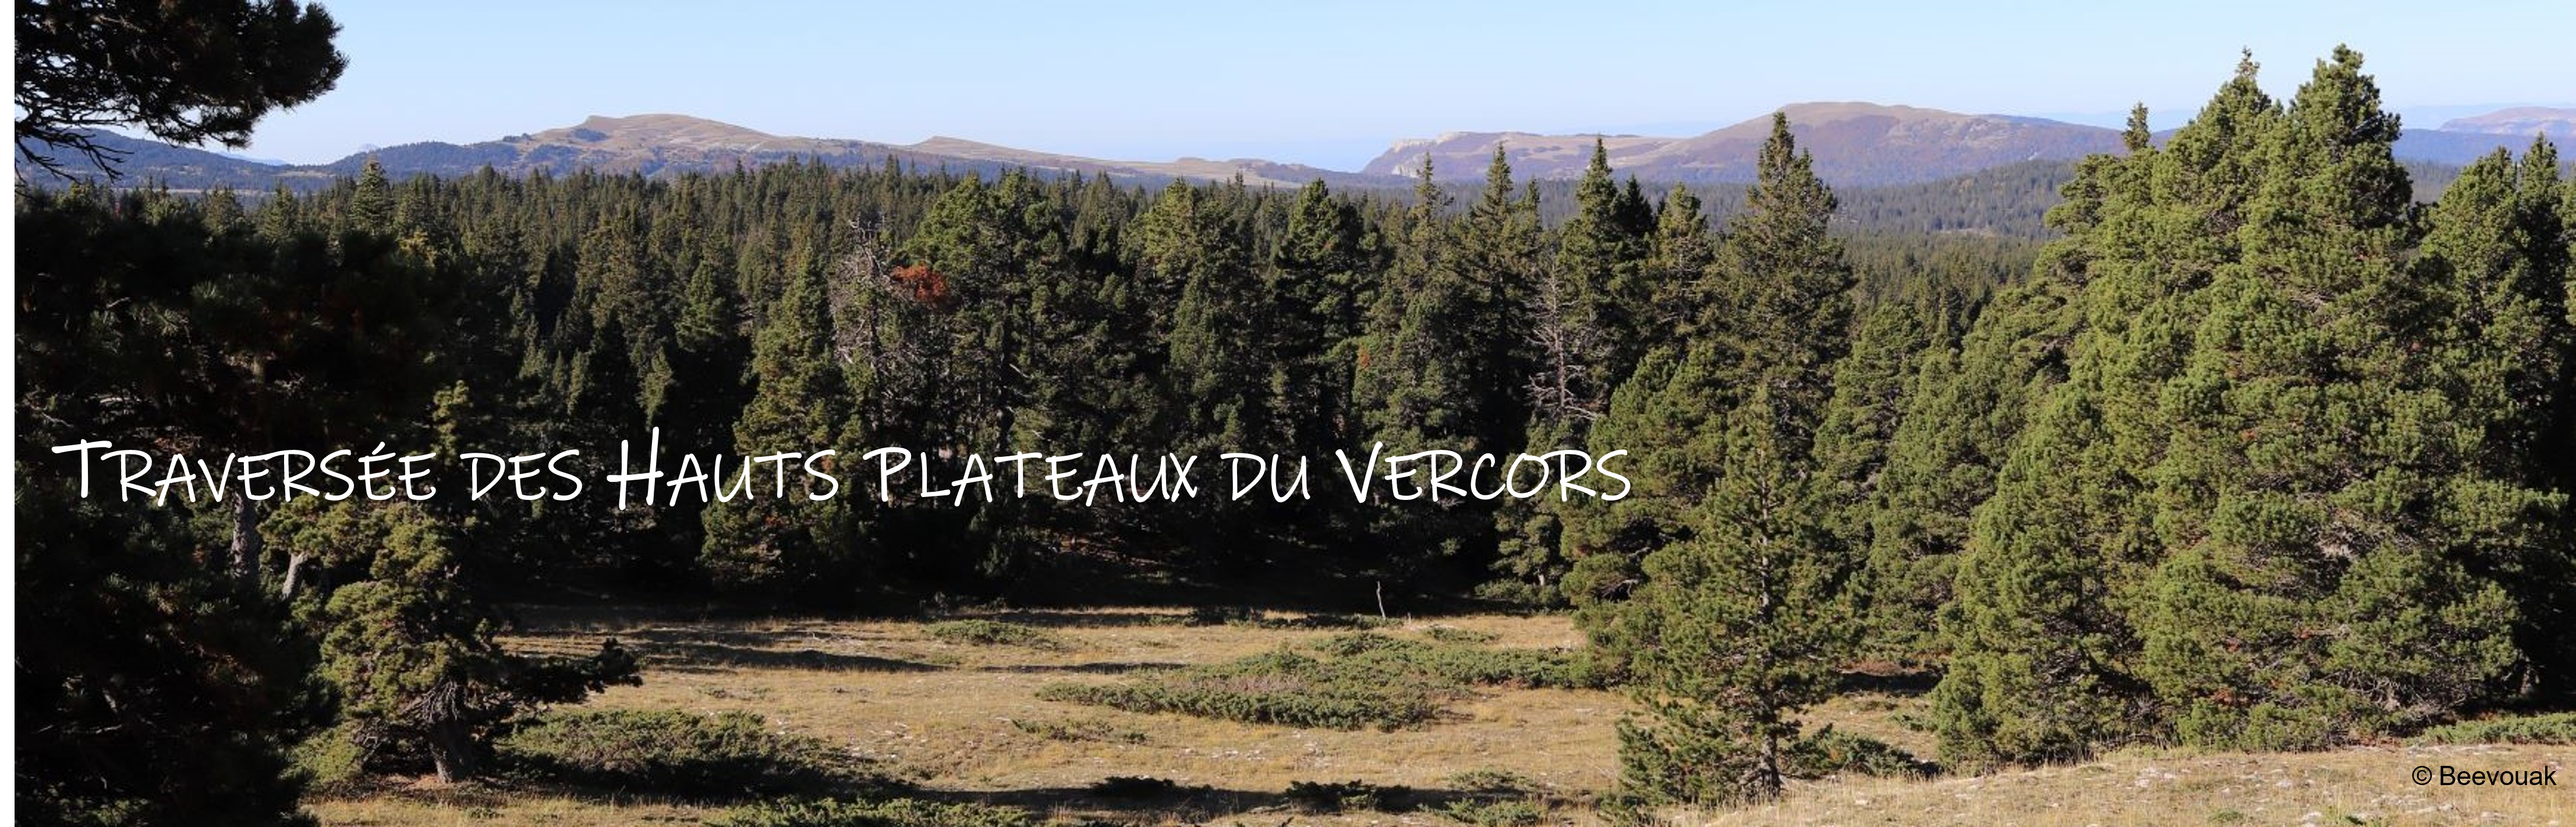 Beevouak - Les Hauts Plateaux du Vercors - 2019